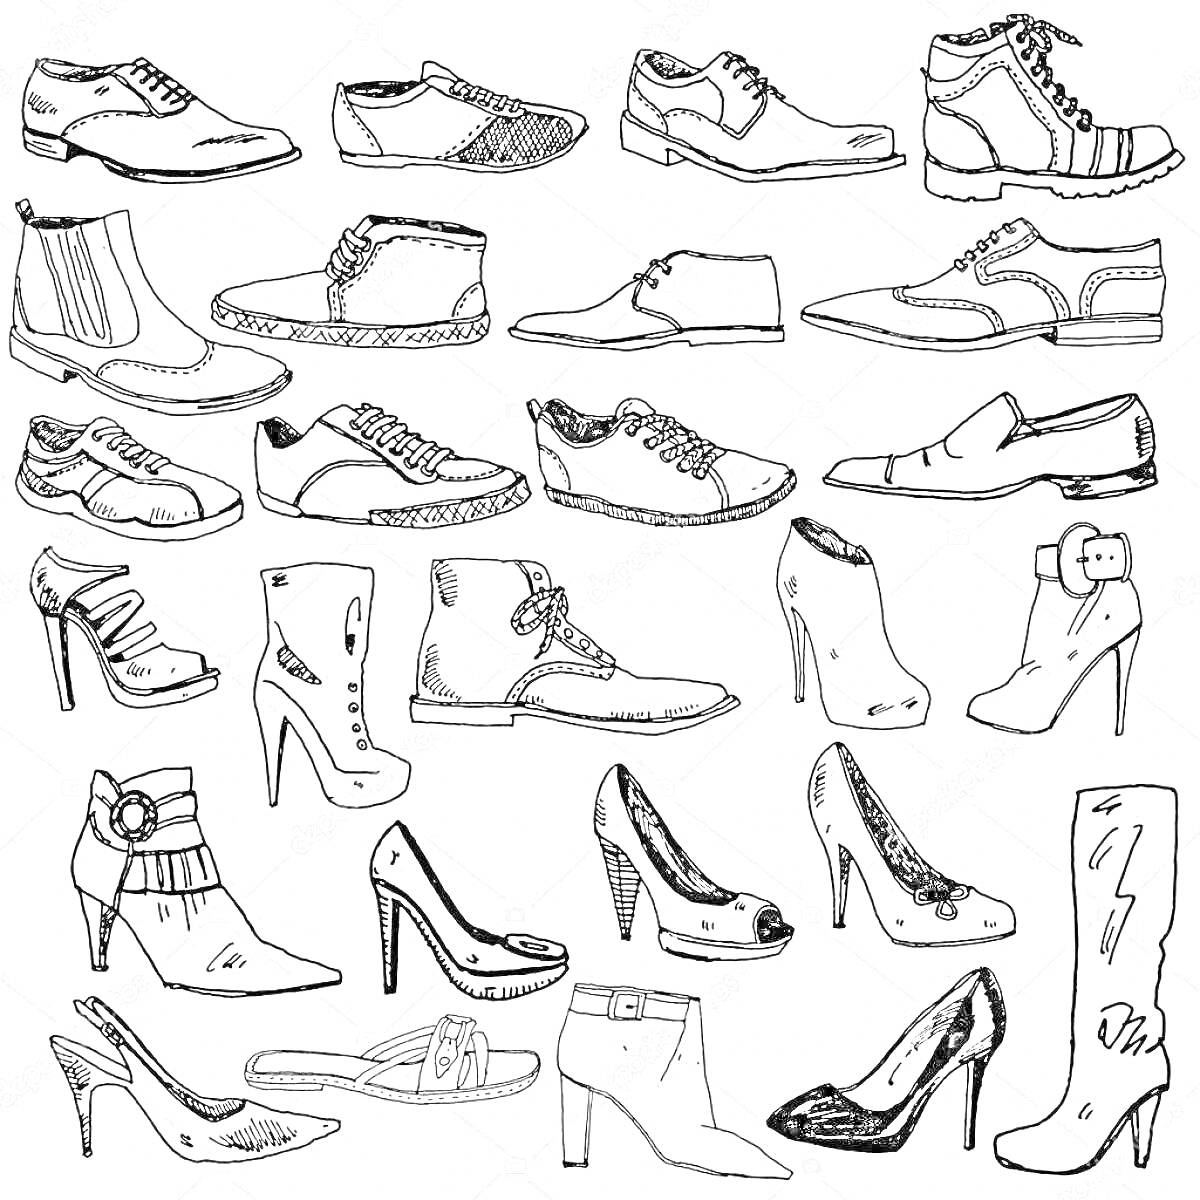 Раскраска Разнообразие Обуви: ботинки, туфли на каблуке, кеды, мокасины, туфли с ремешком, лоферы, сникеры, сапоги